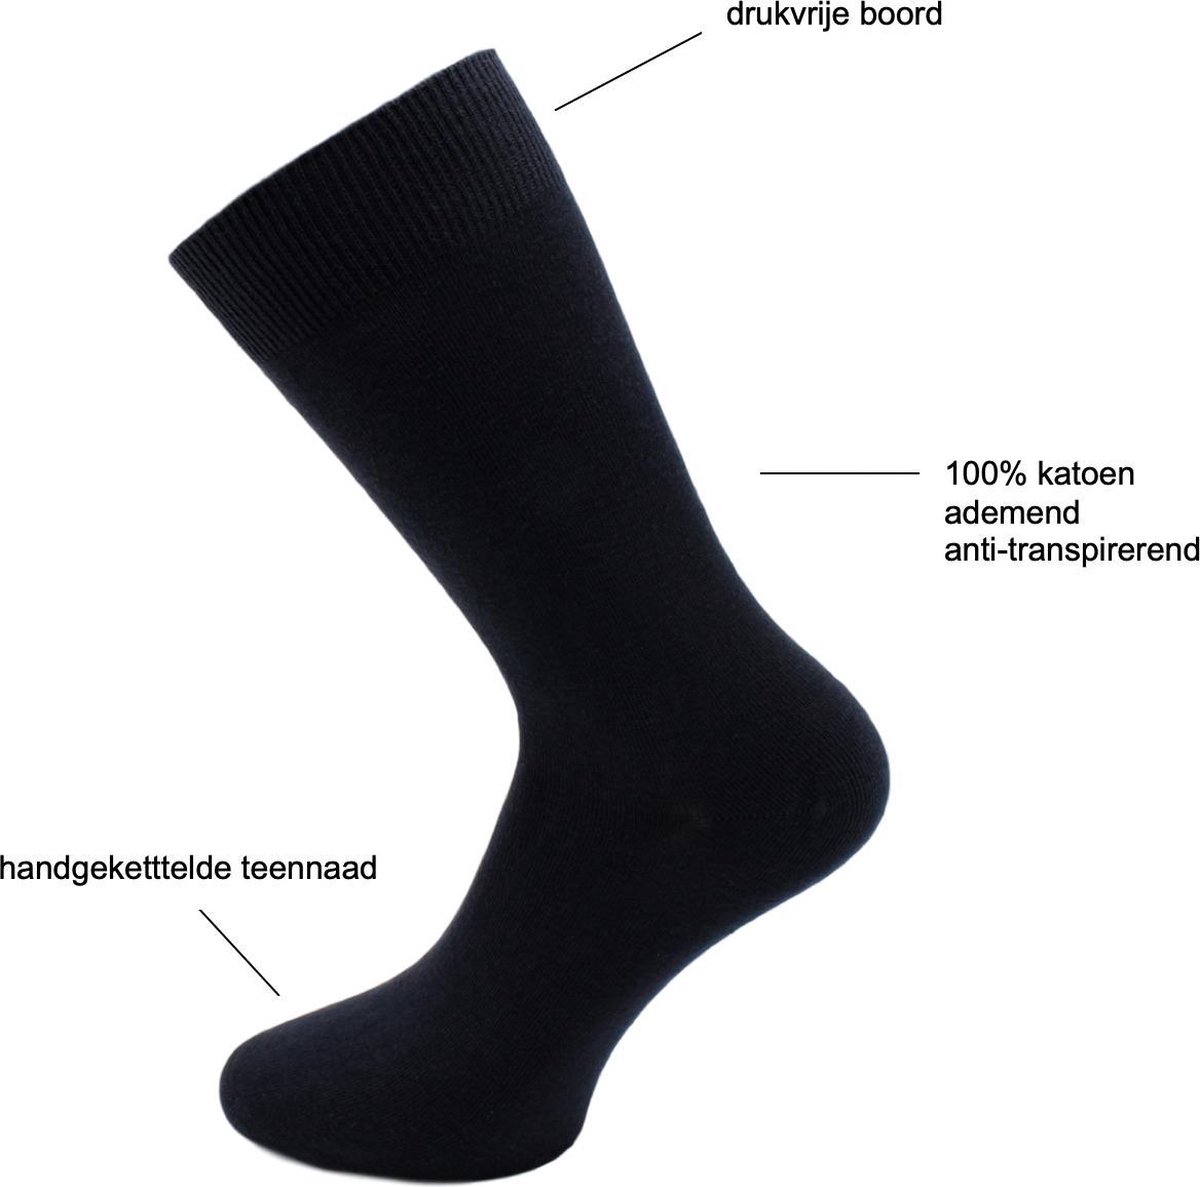 FOOTNOTE Chaussettes femmes/hommes tailles: 35-38 en noir ou couleur jean 39-42 et 43-46 10 paires 